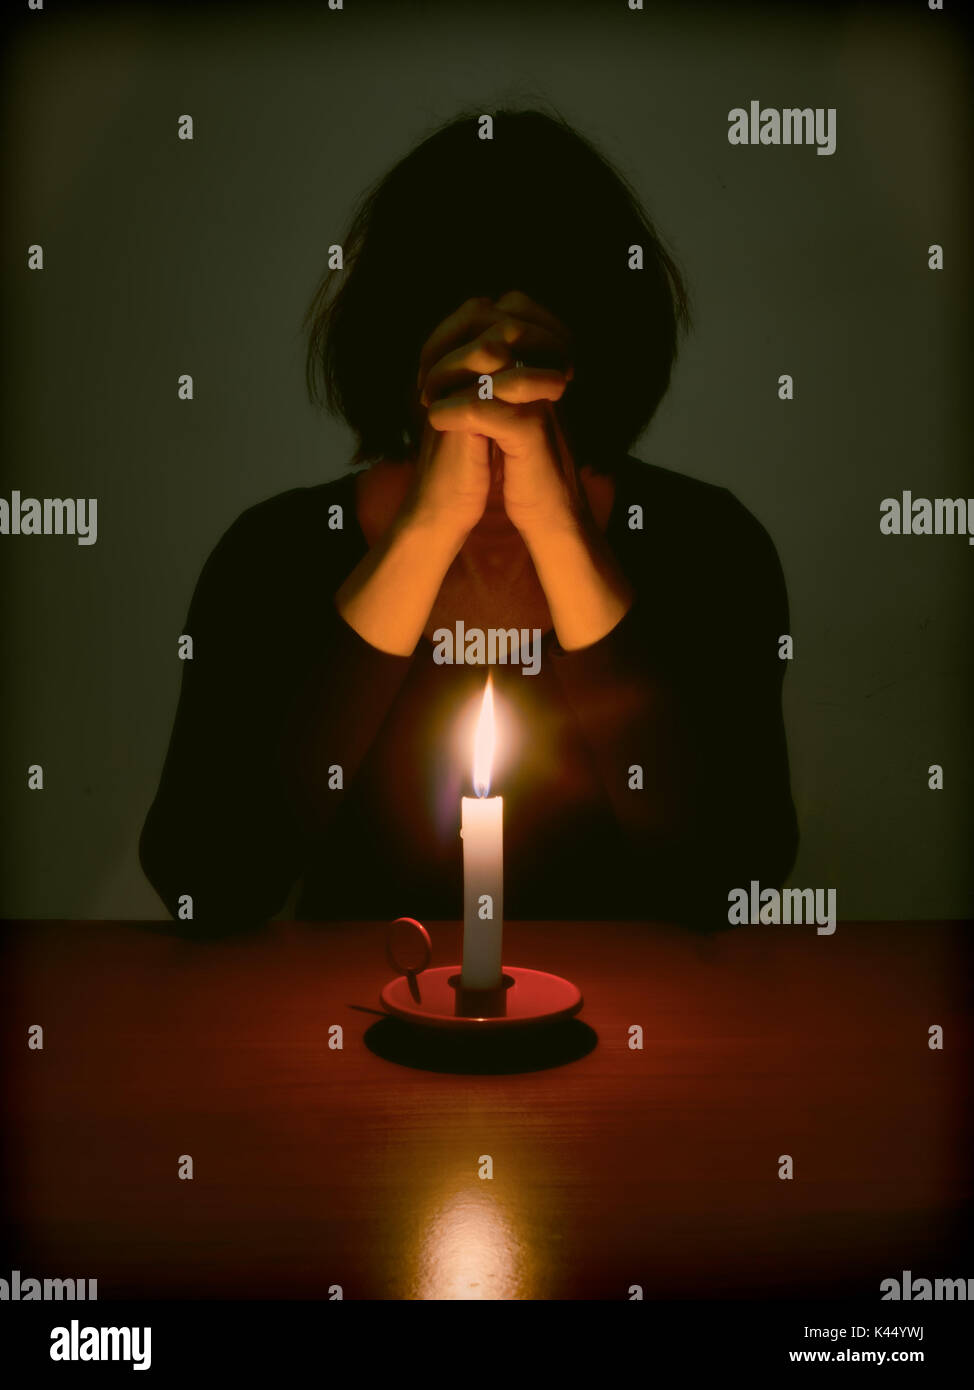 Immagine religiosa della donna in preghiera nella stanza buia a tavola. Foto Stock